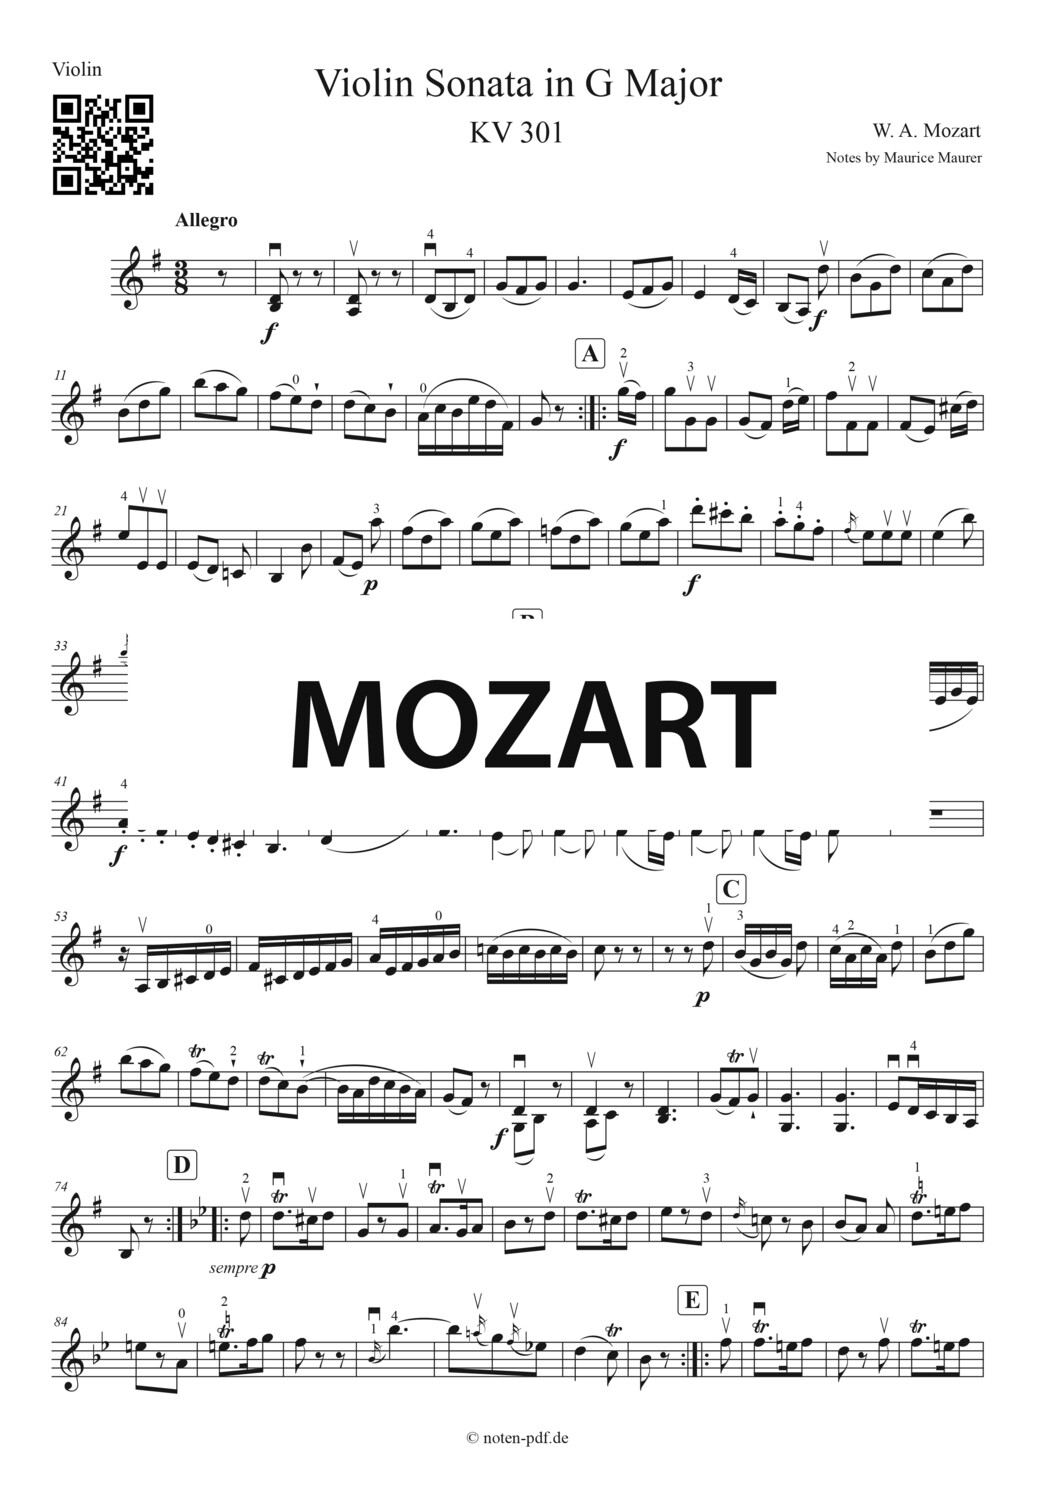 Mozart: Violin Sonate KV 301 in G Major 2. Movement Arrangement for 2 Violins + MP3